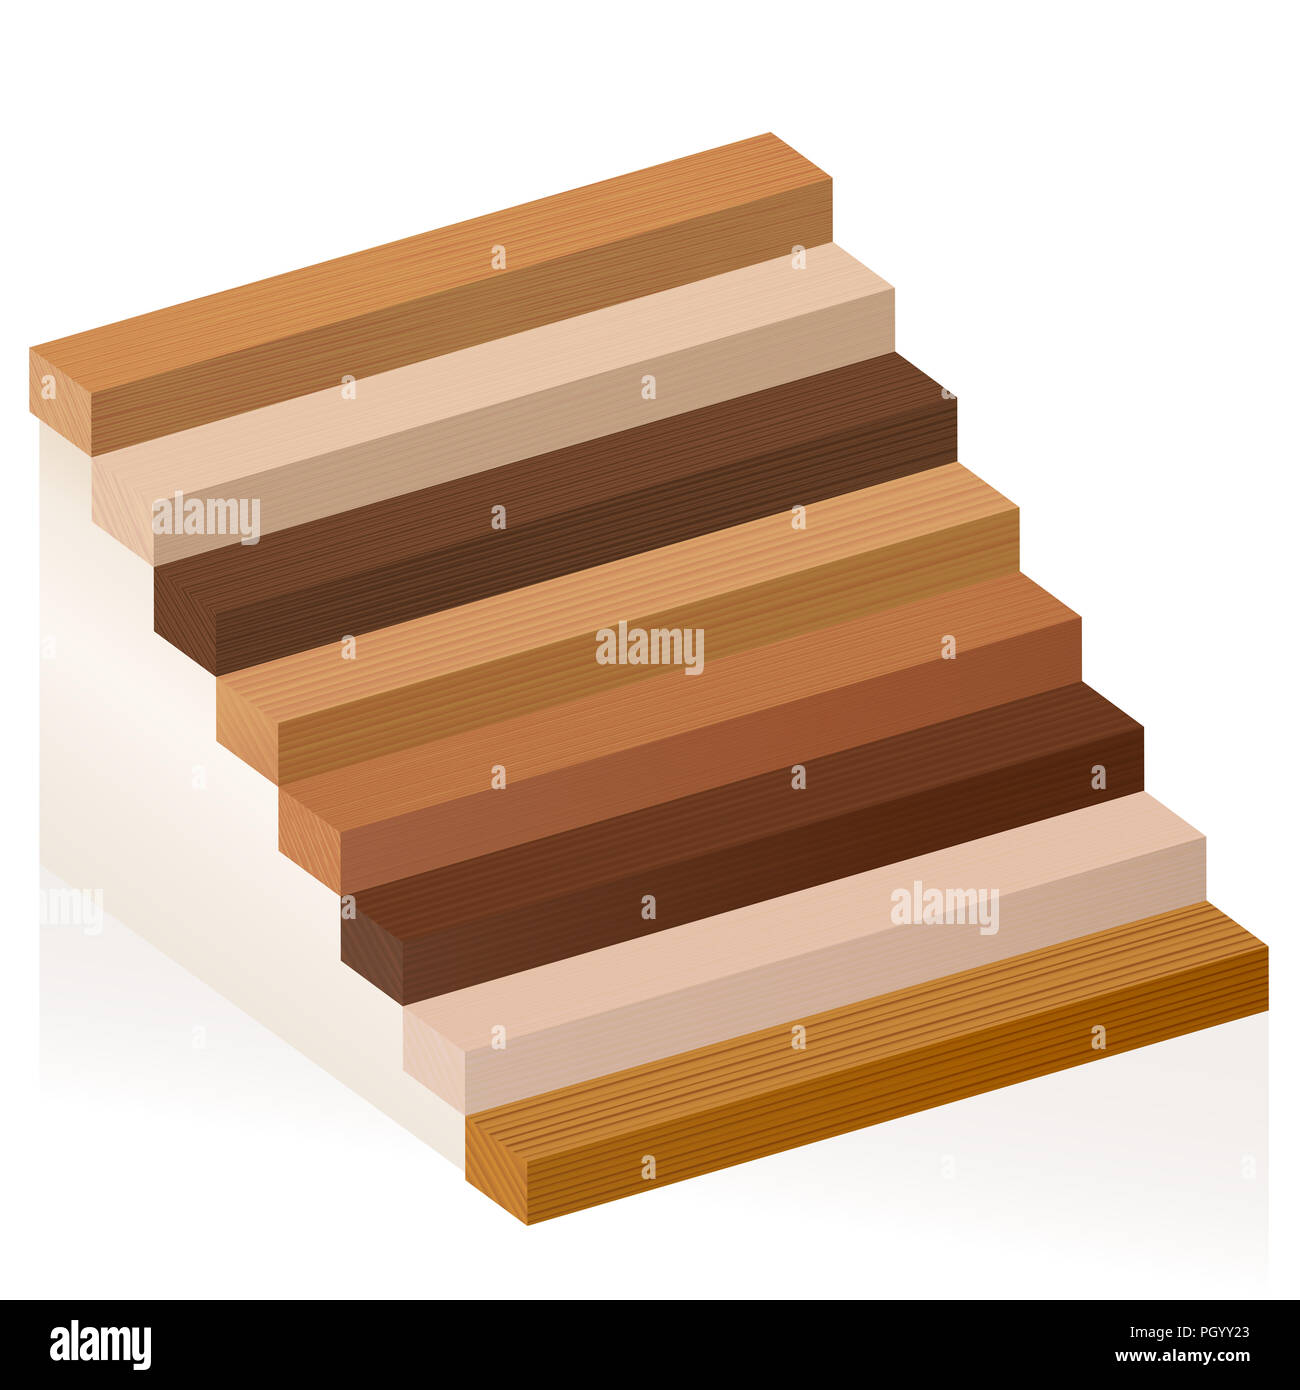 Escalier en bois - d'échantillons de bois avec différentes textures, couleurs, glaçures, de divers arbres de choisir - marron, noir, gris, léger, rouge, jaune, orange. Banque D'Images